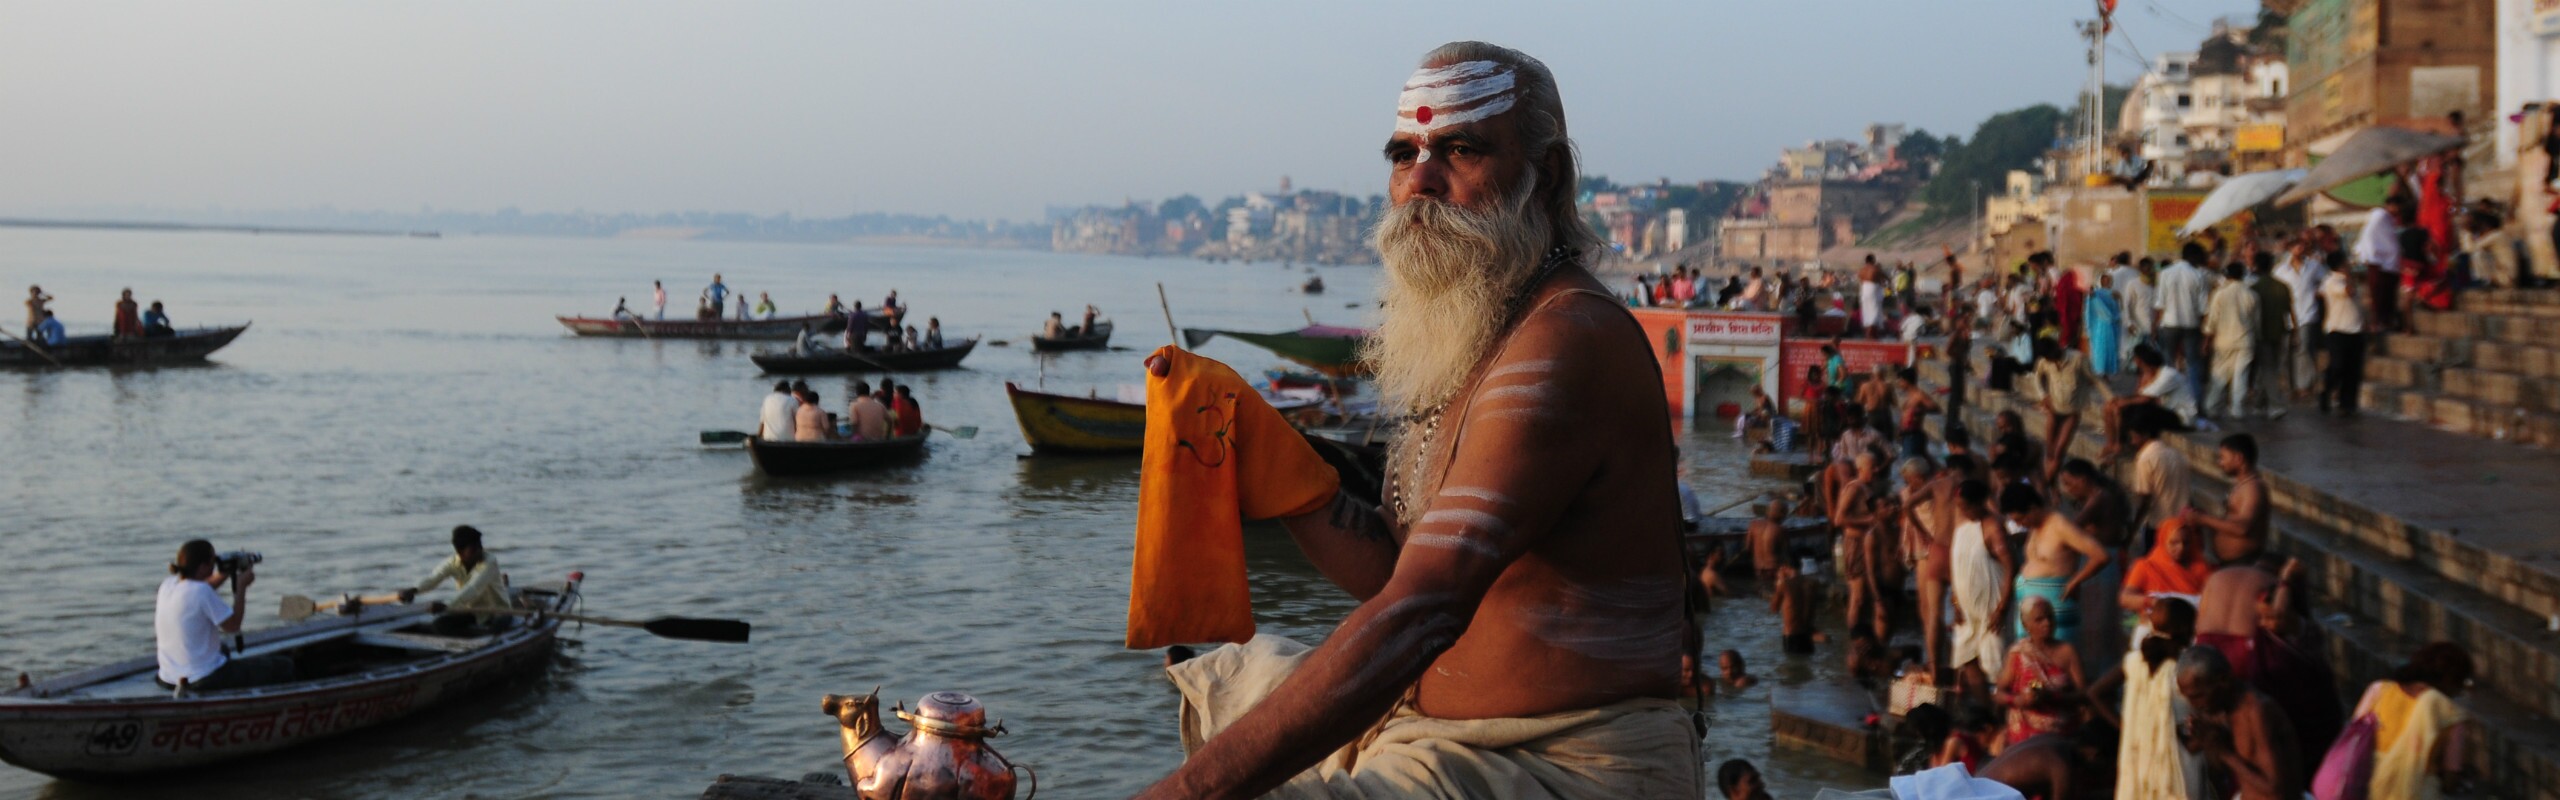 India Ganges River